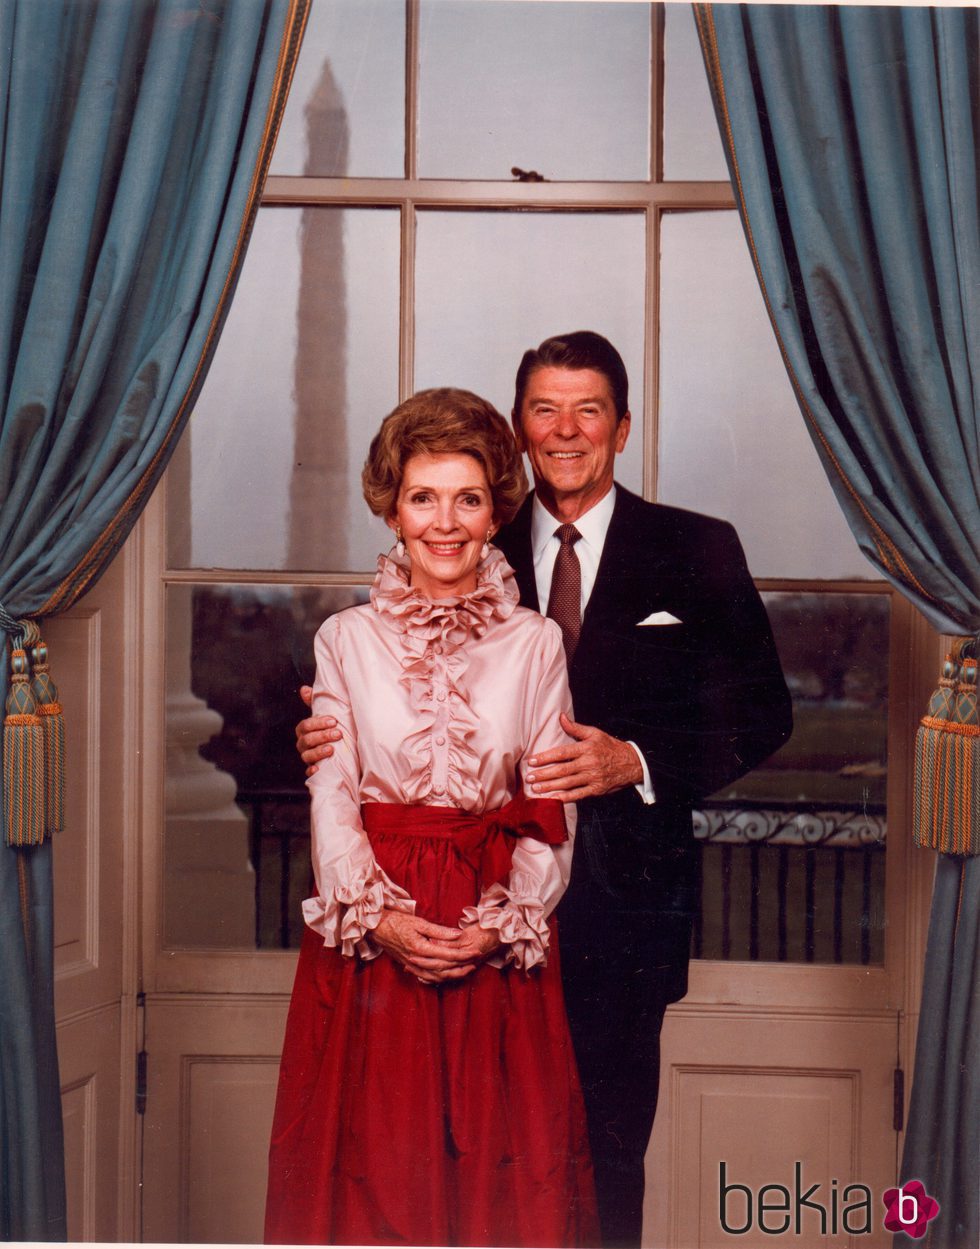 Foto oficial del Presidente Ronald Reagan con su mujer Nancy